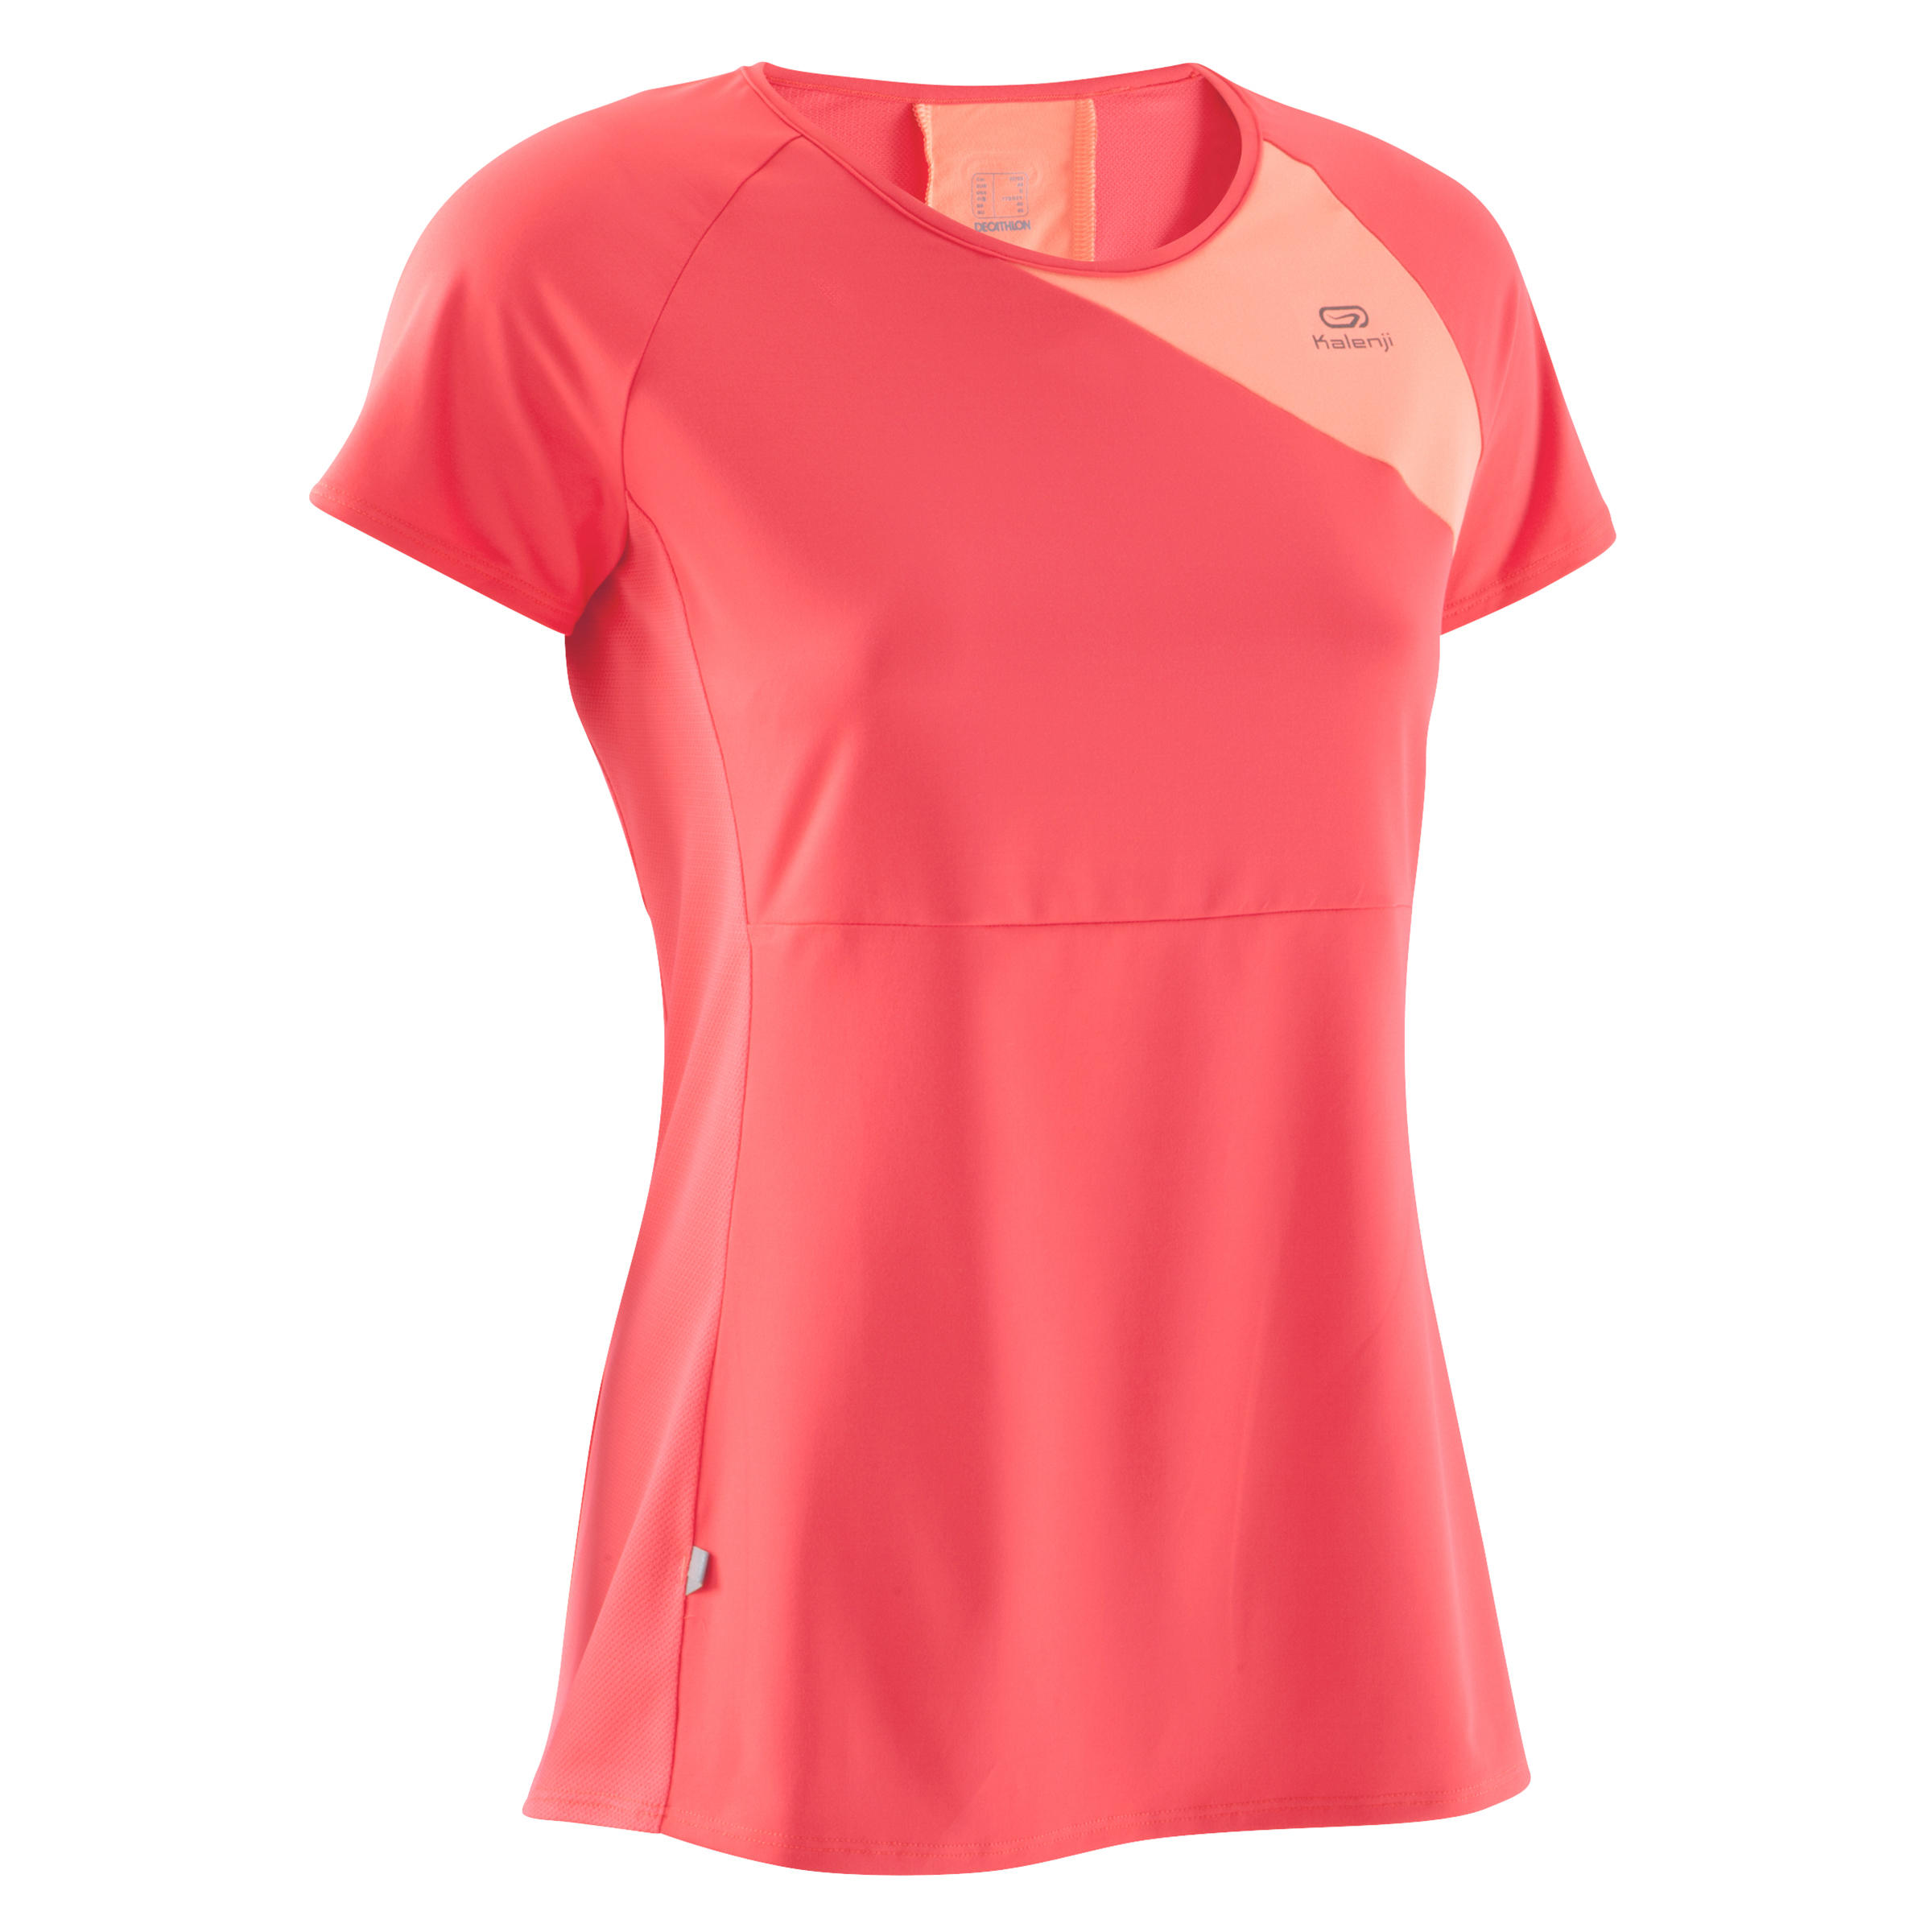 KALENJI Run Dry + Women's Running T-Shirt - Neon Coral